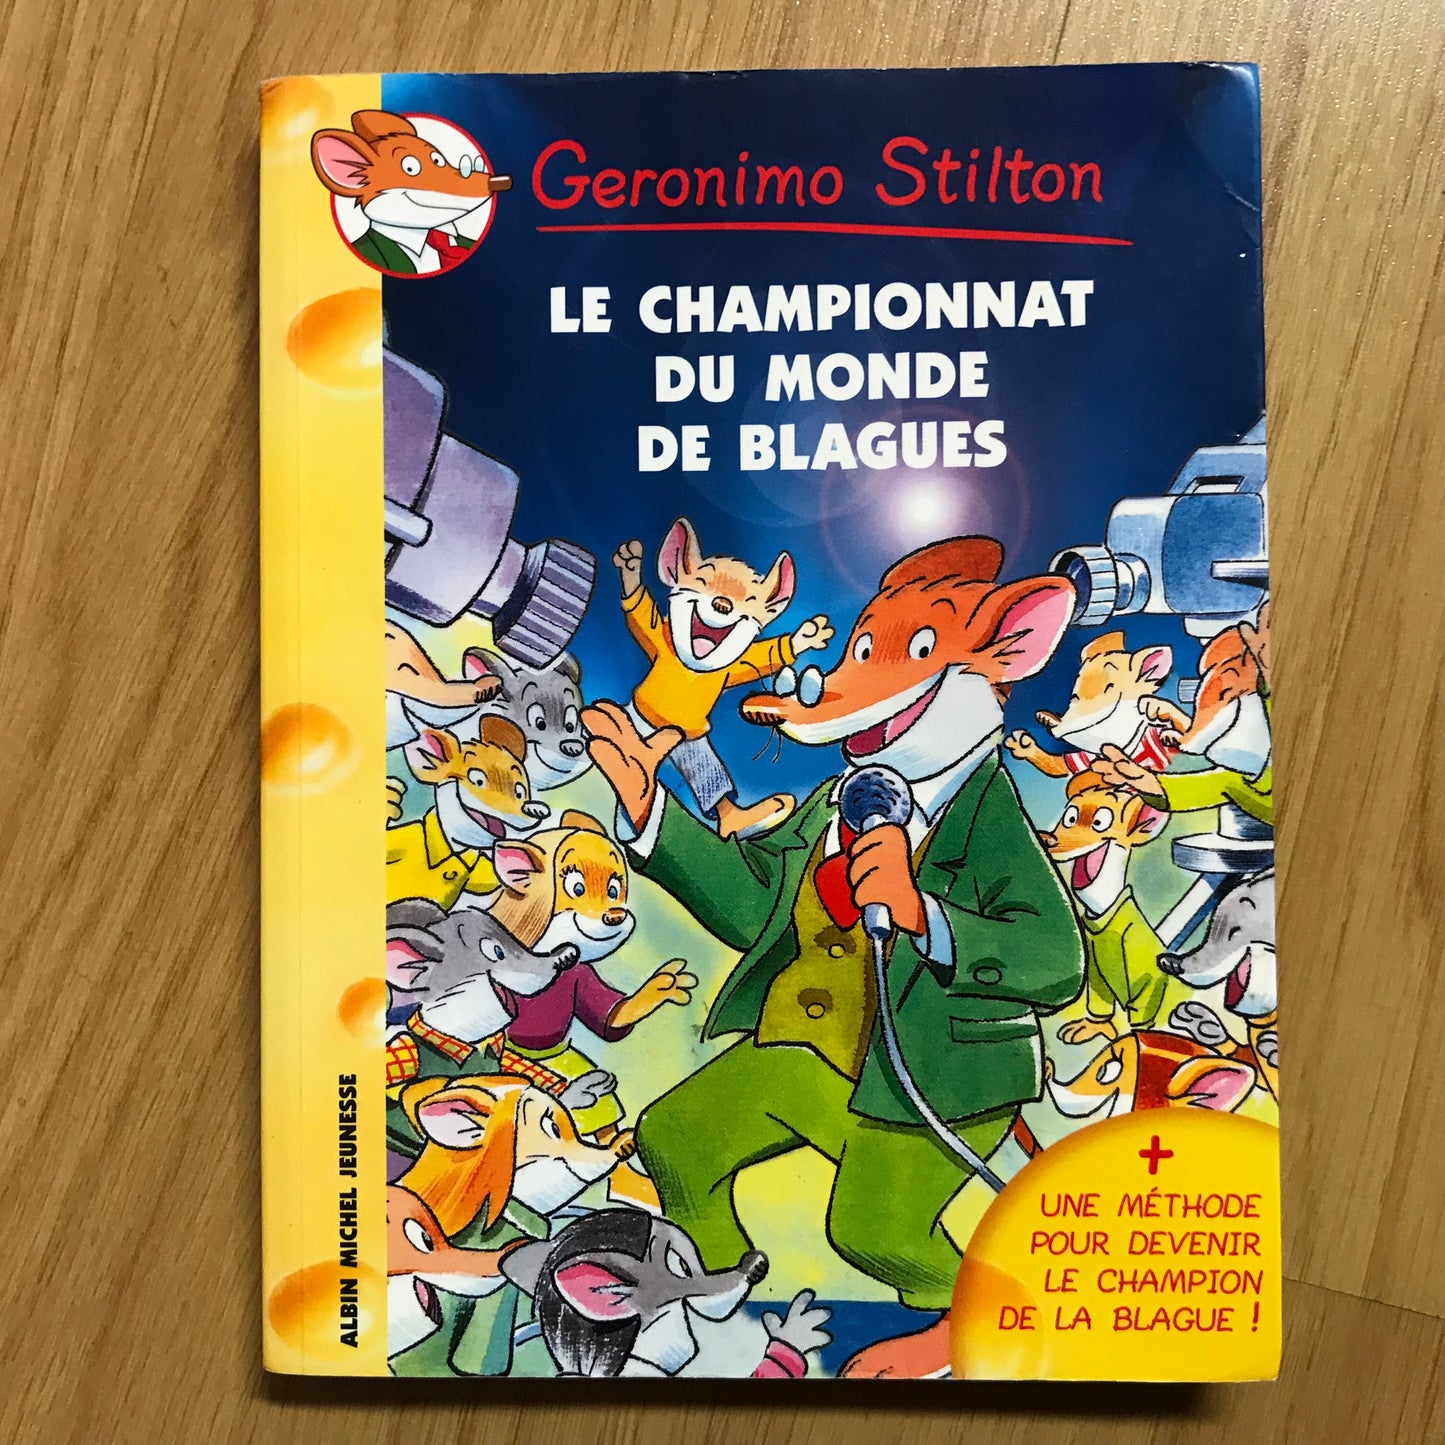 Geronimo Stilton 26: Le championnat du monde de blagues